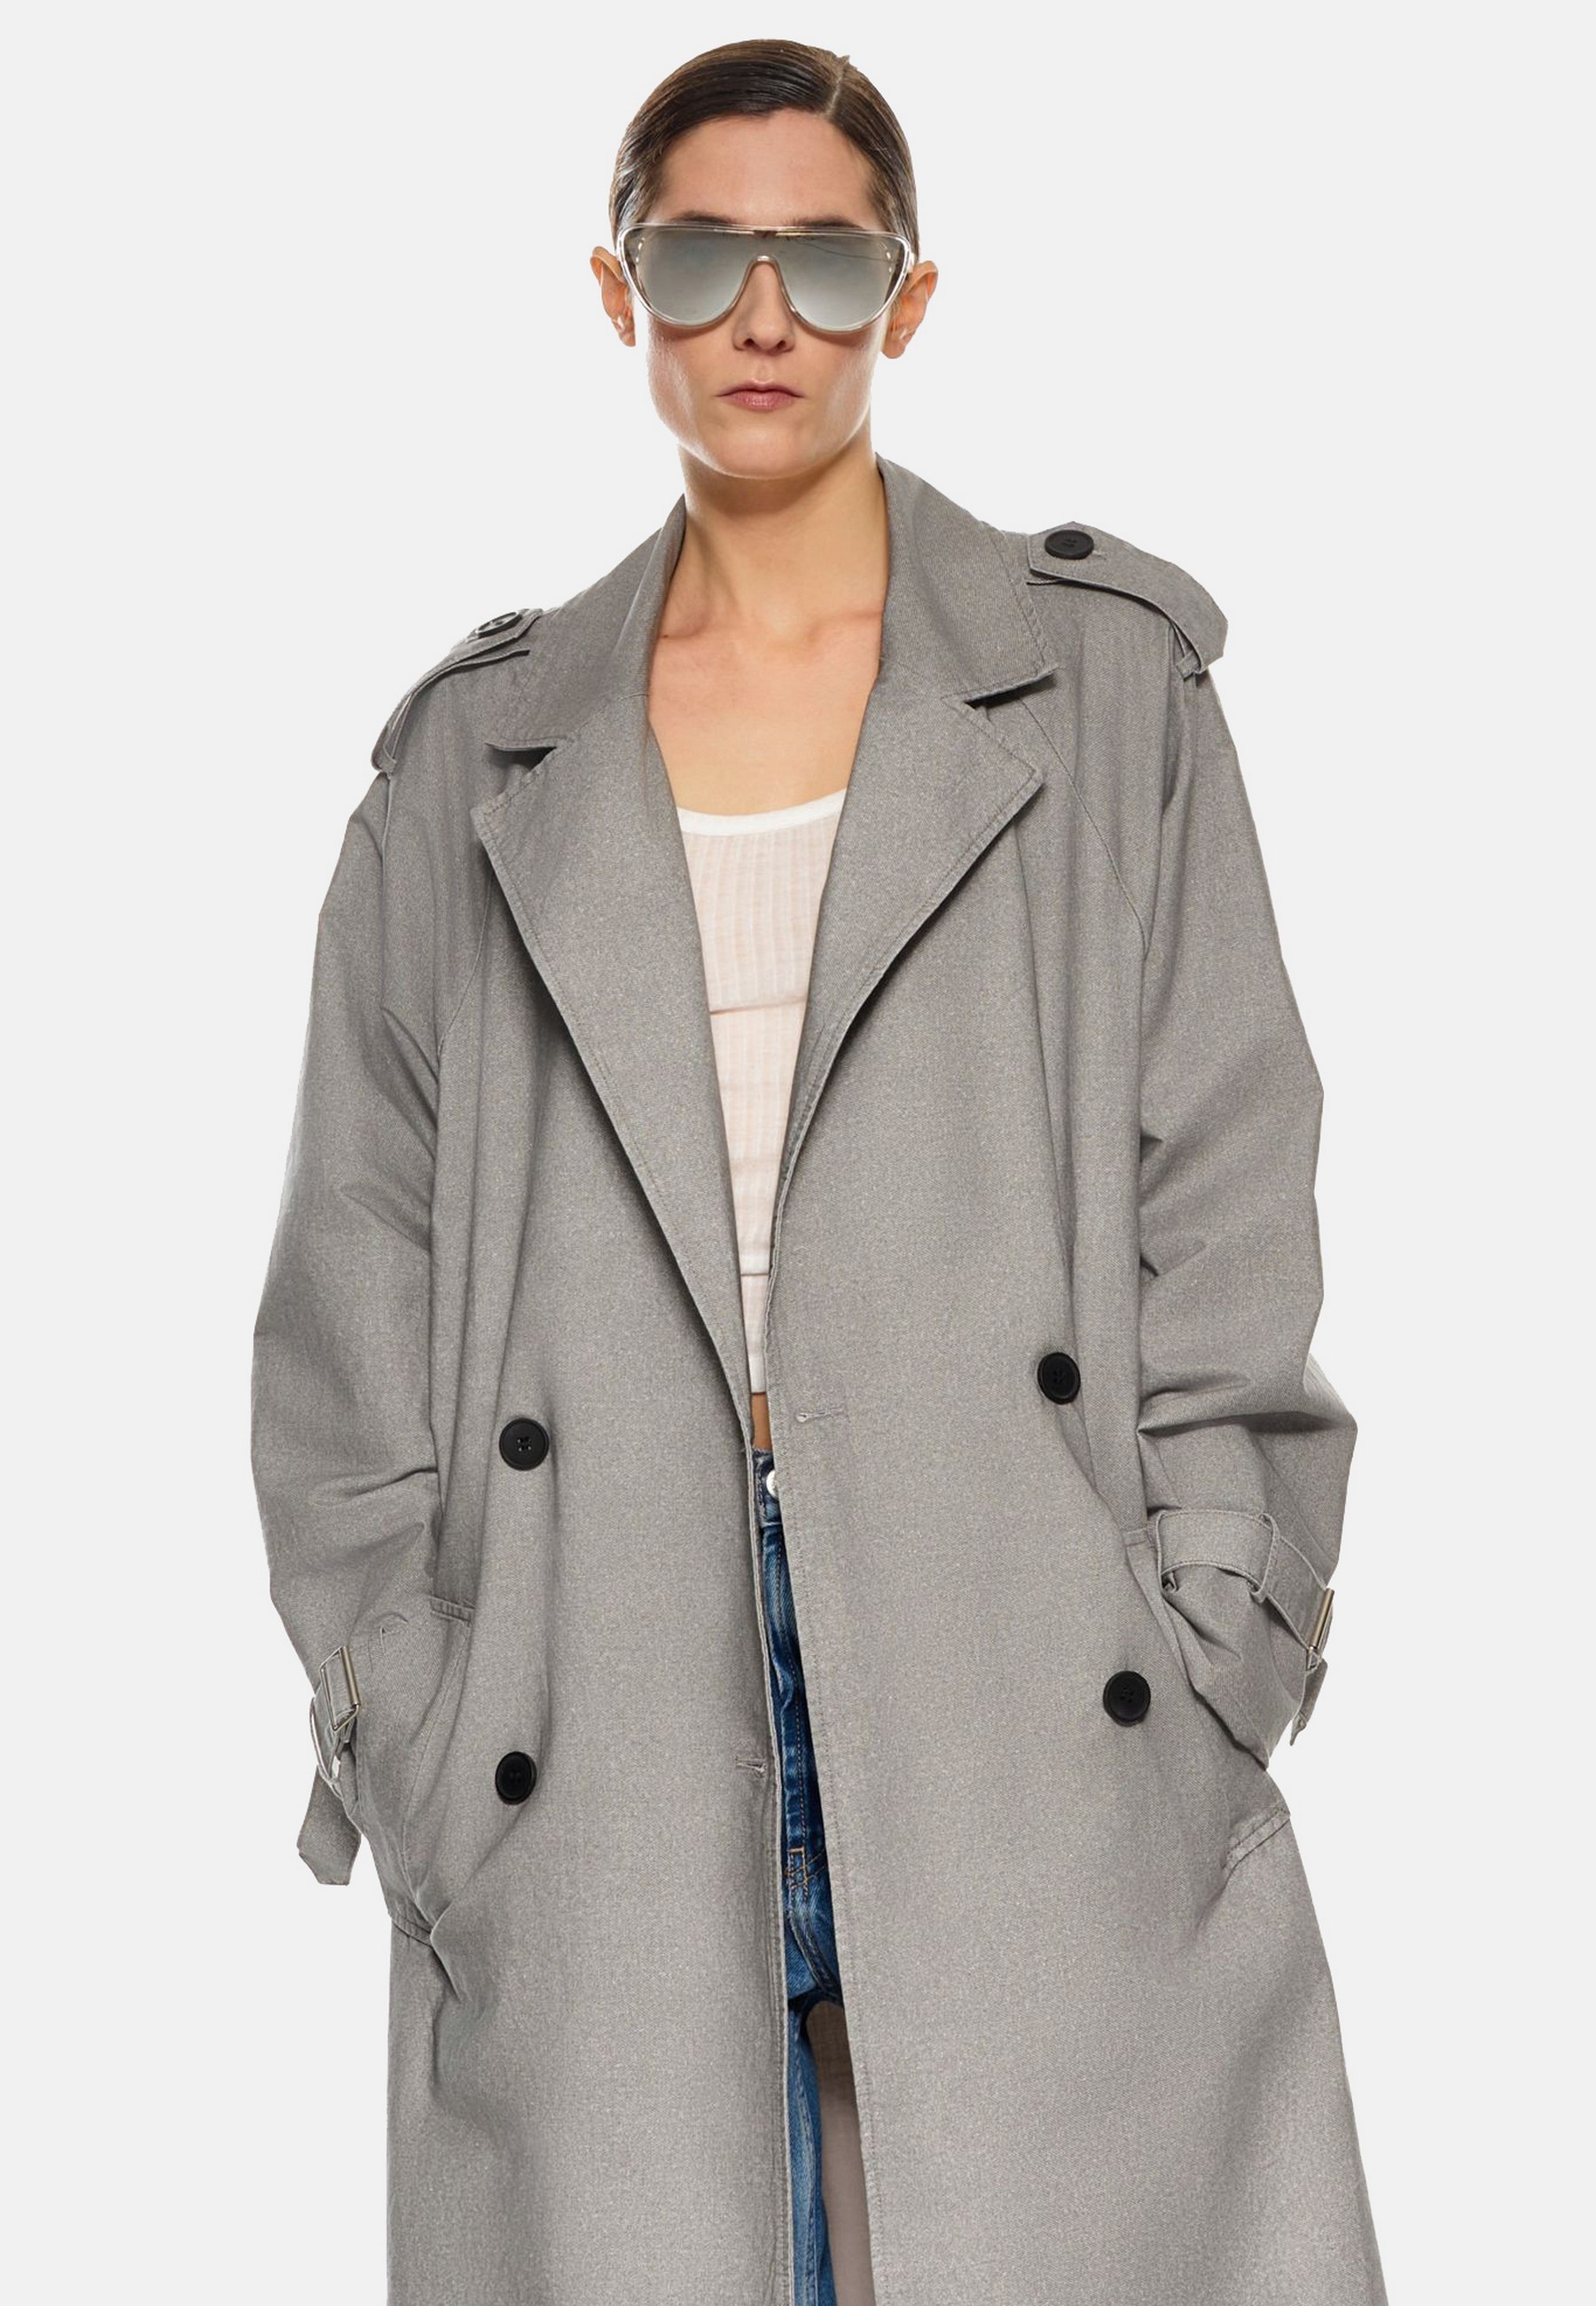 Damen Textil Mantel Clarissa in Grau von Ricano - Frontansicht am Model